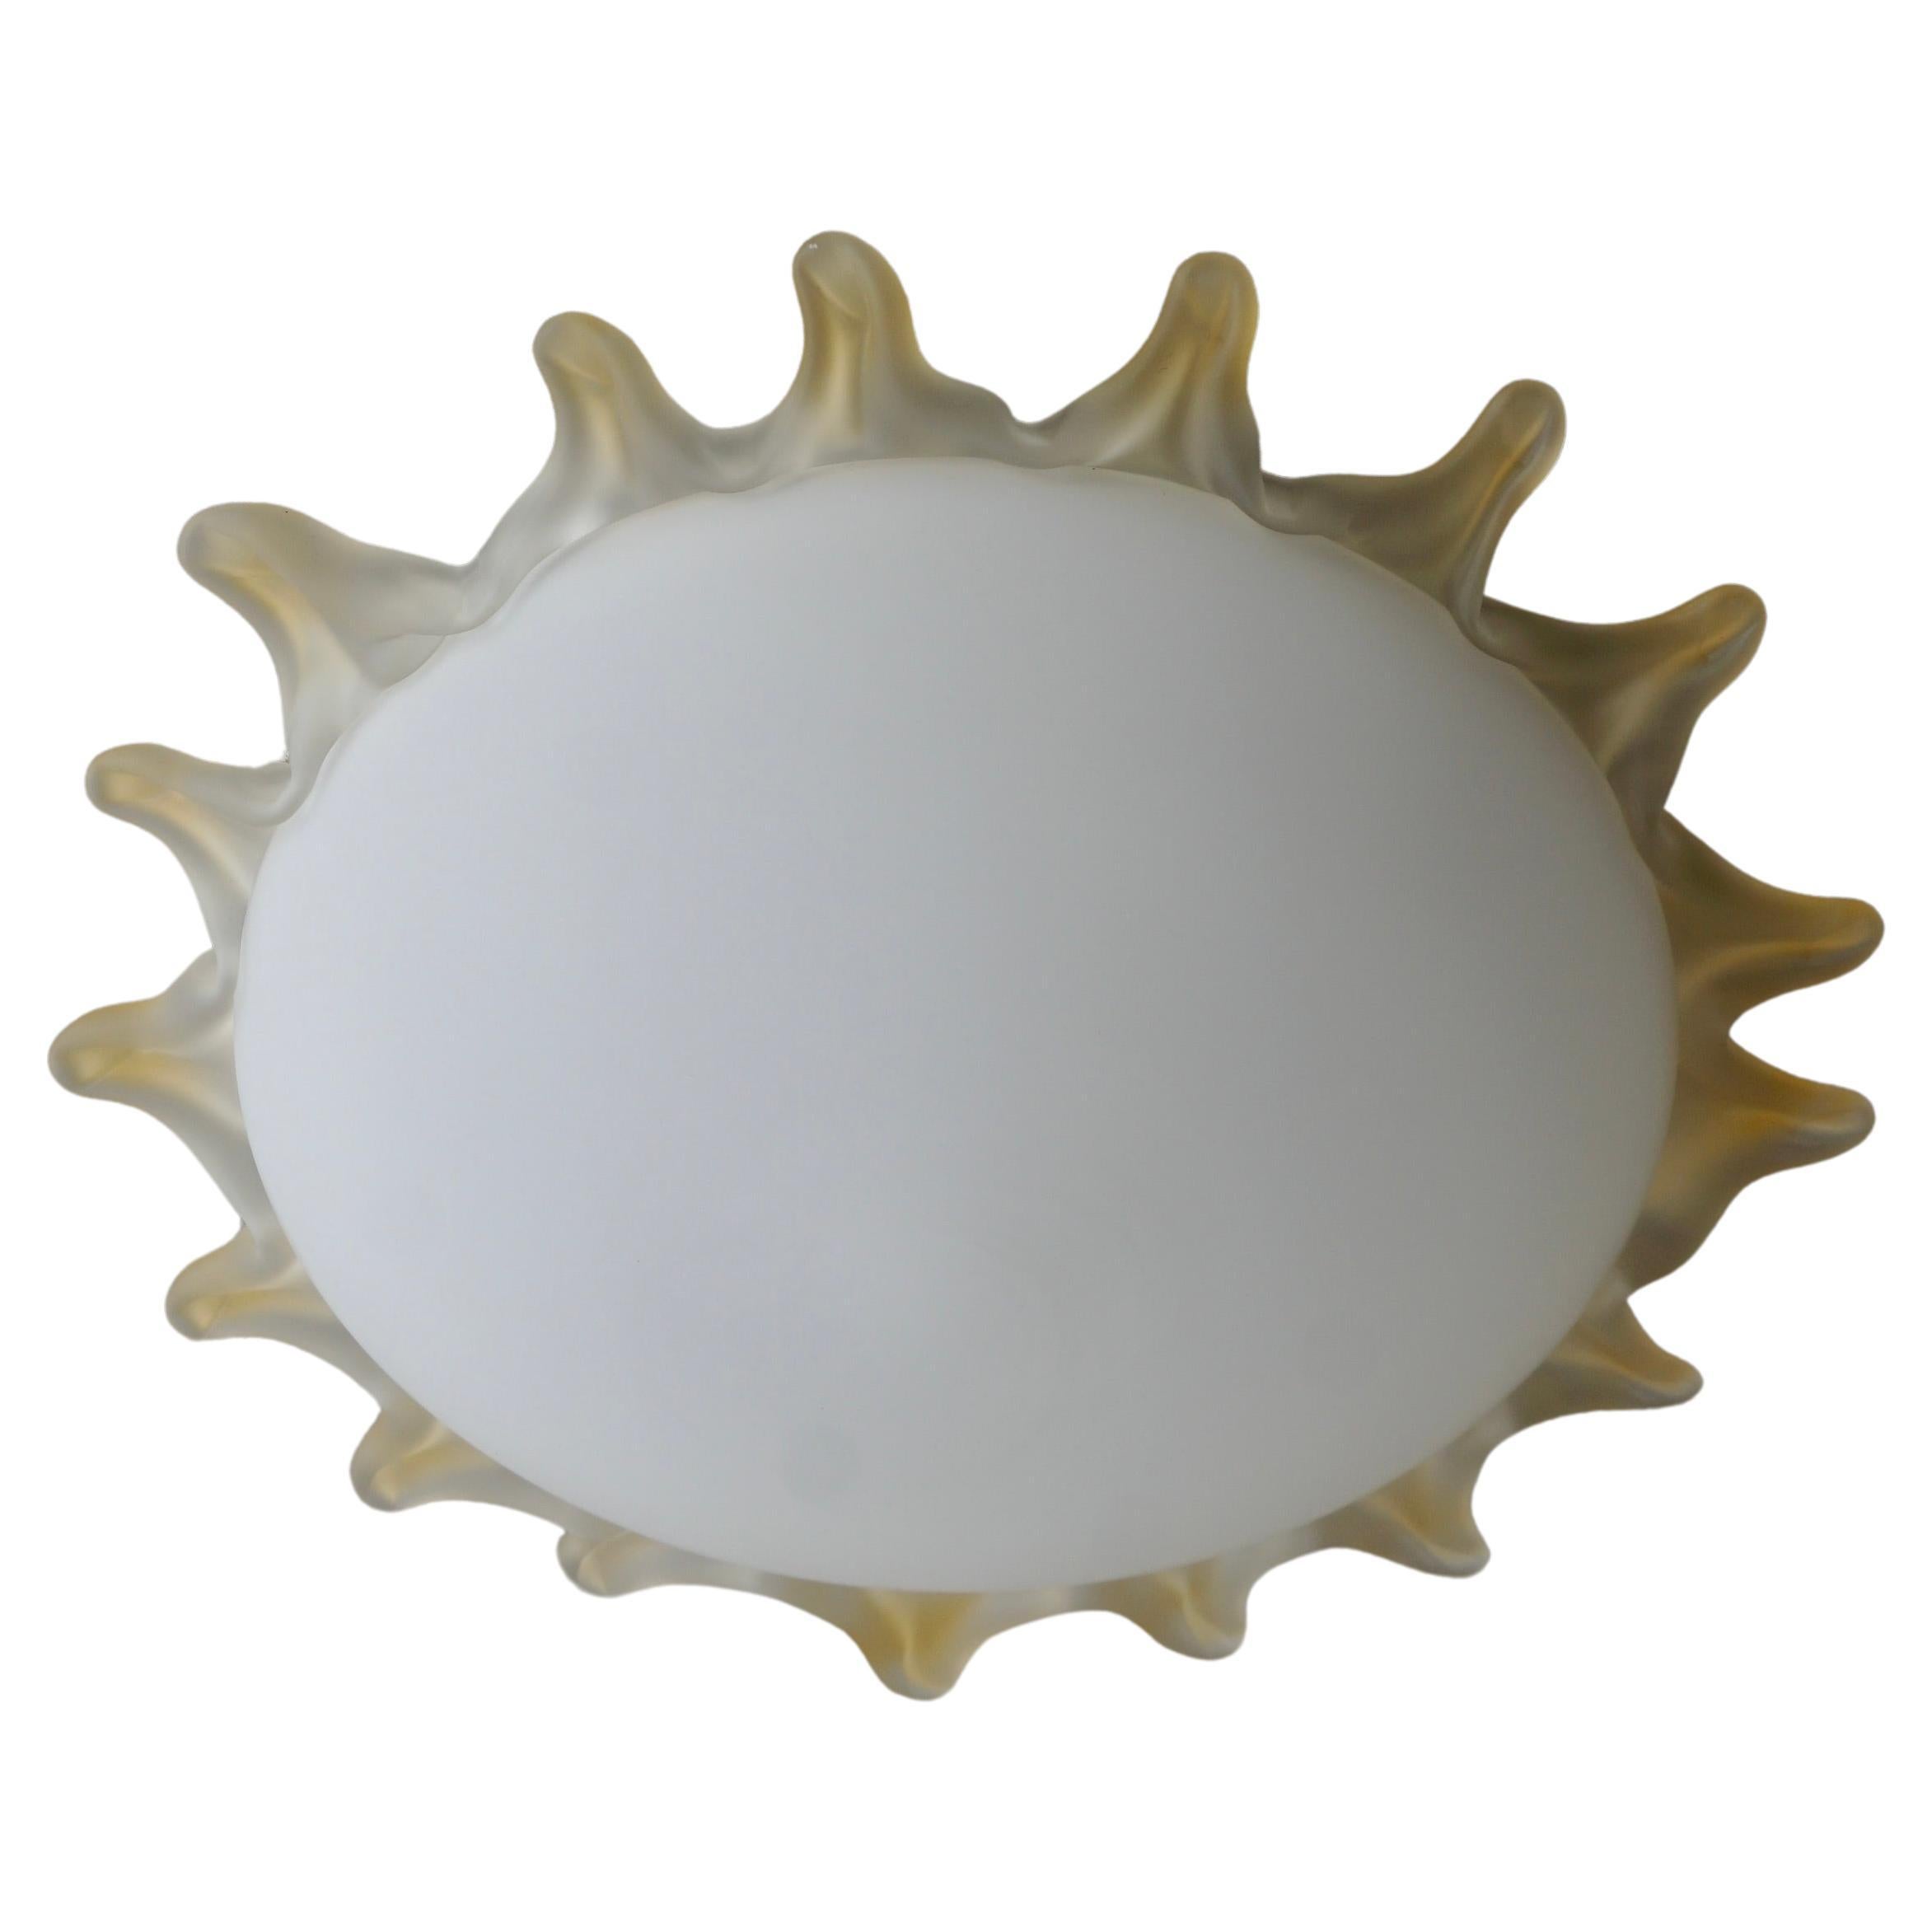 Italienische Murano-Glas-Deckenlampe in Form einer Sonne. Sie kann natürlich auch als Wandlampe oder Wandleuchter verwendet werden.

Die Unterputzleuchte hat eine Fassung für Glühlampen mit Schraubsockel oder LEDs vom Typ E27. Es ist möglich, diese